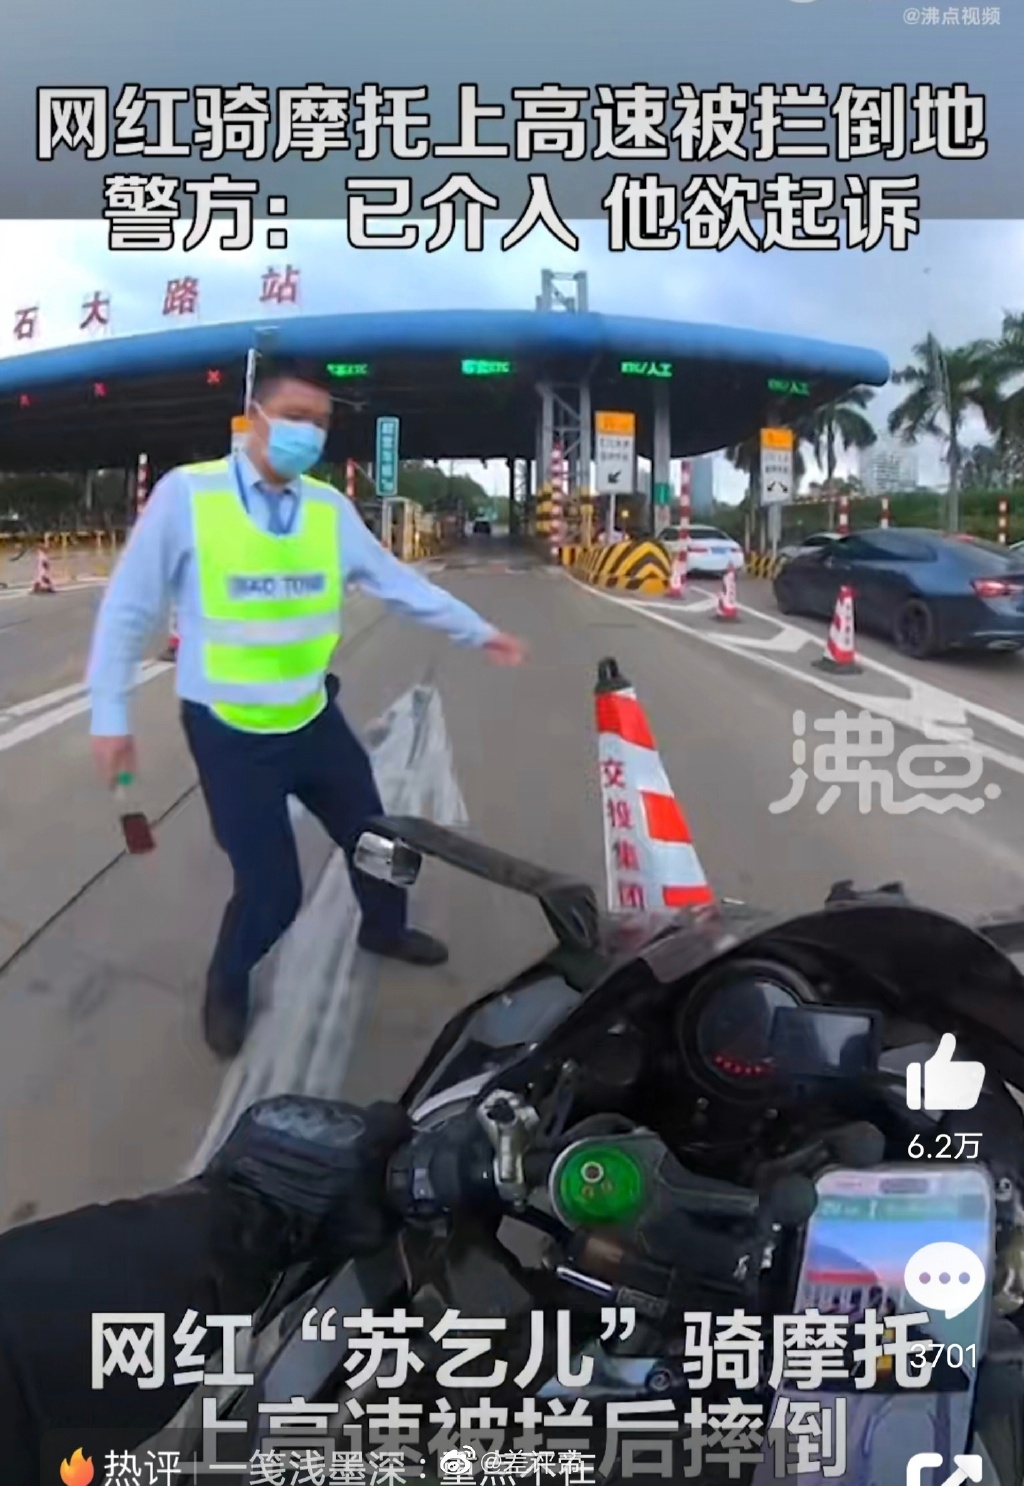 警方回應網紅騎摩托上高速被攔摔倒 到底誰的責任 律師這樣解釋